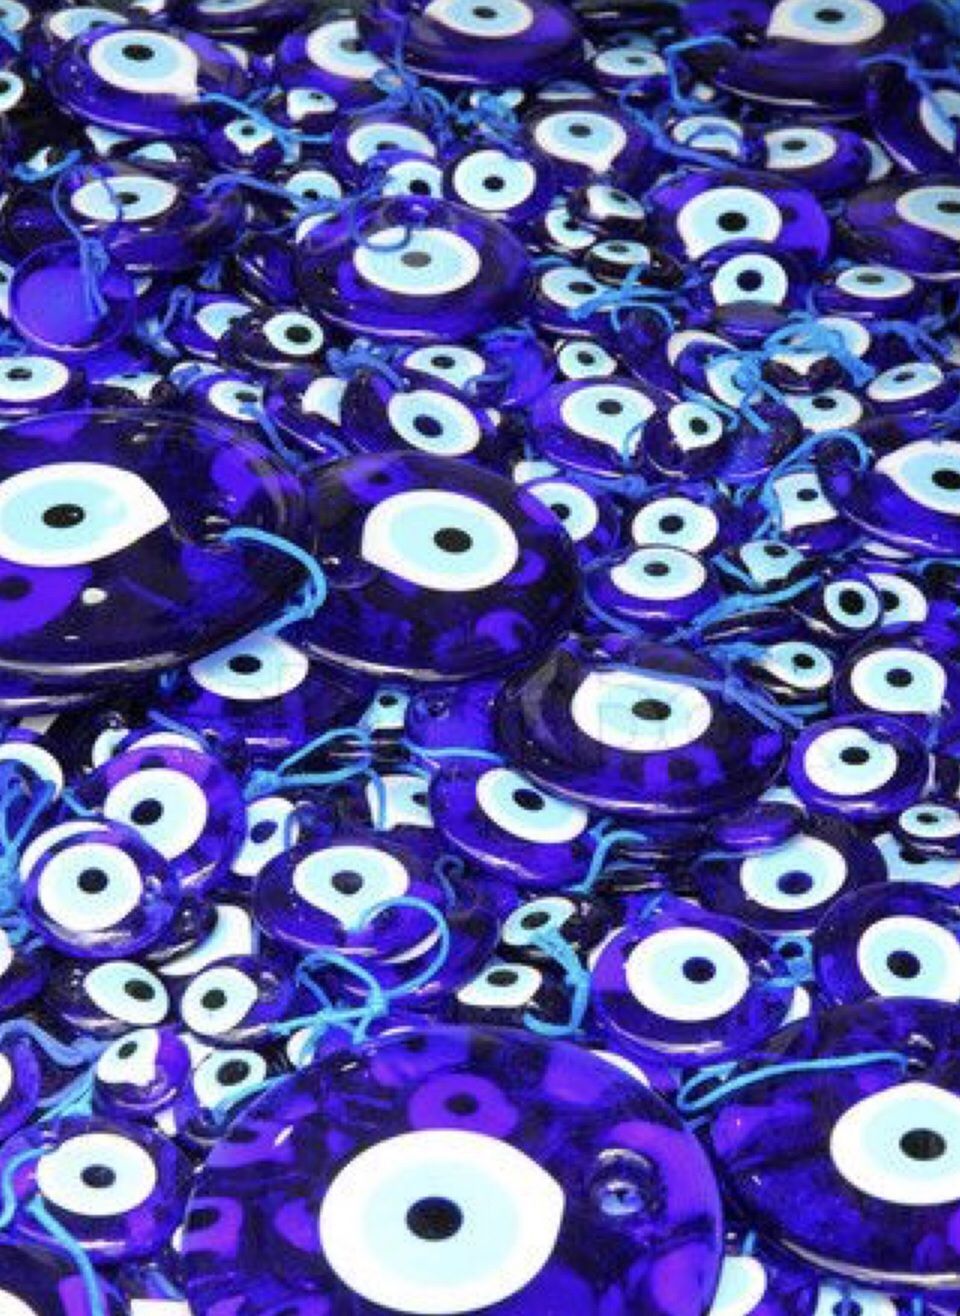 pcs Evil eye beads bulk gifts wedding favor for guest. Etsy. Eyes wallpaper, Blue evil eye, Evil eye charm